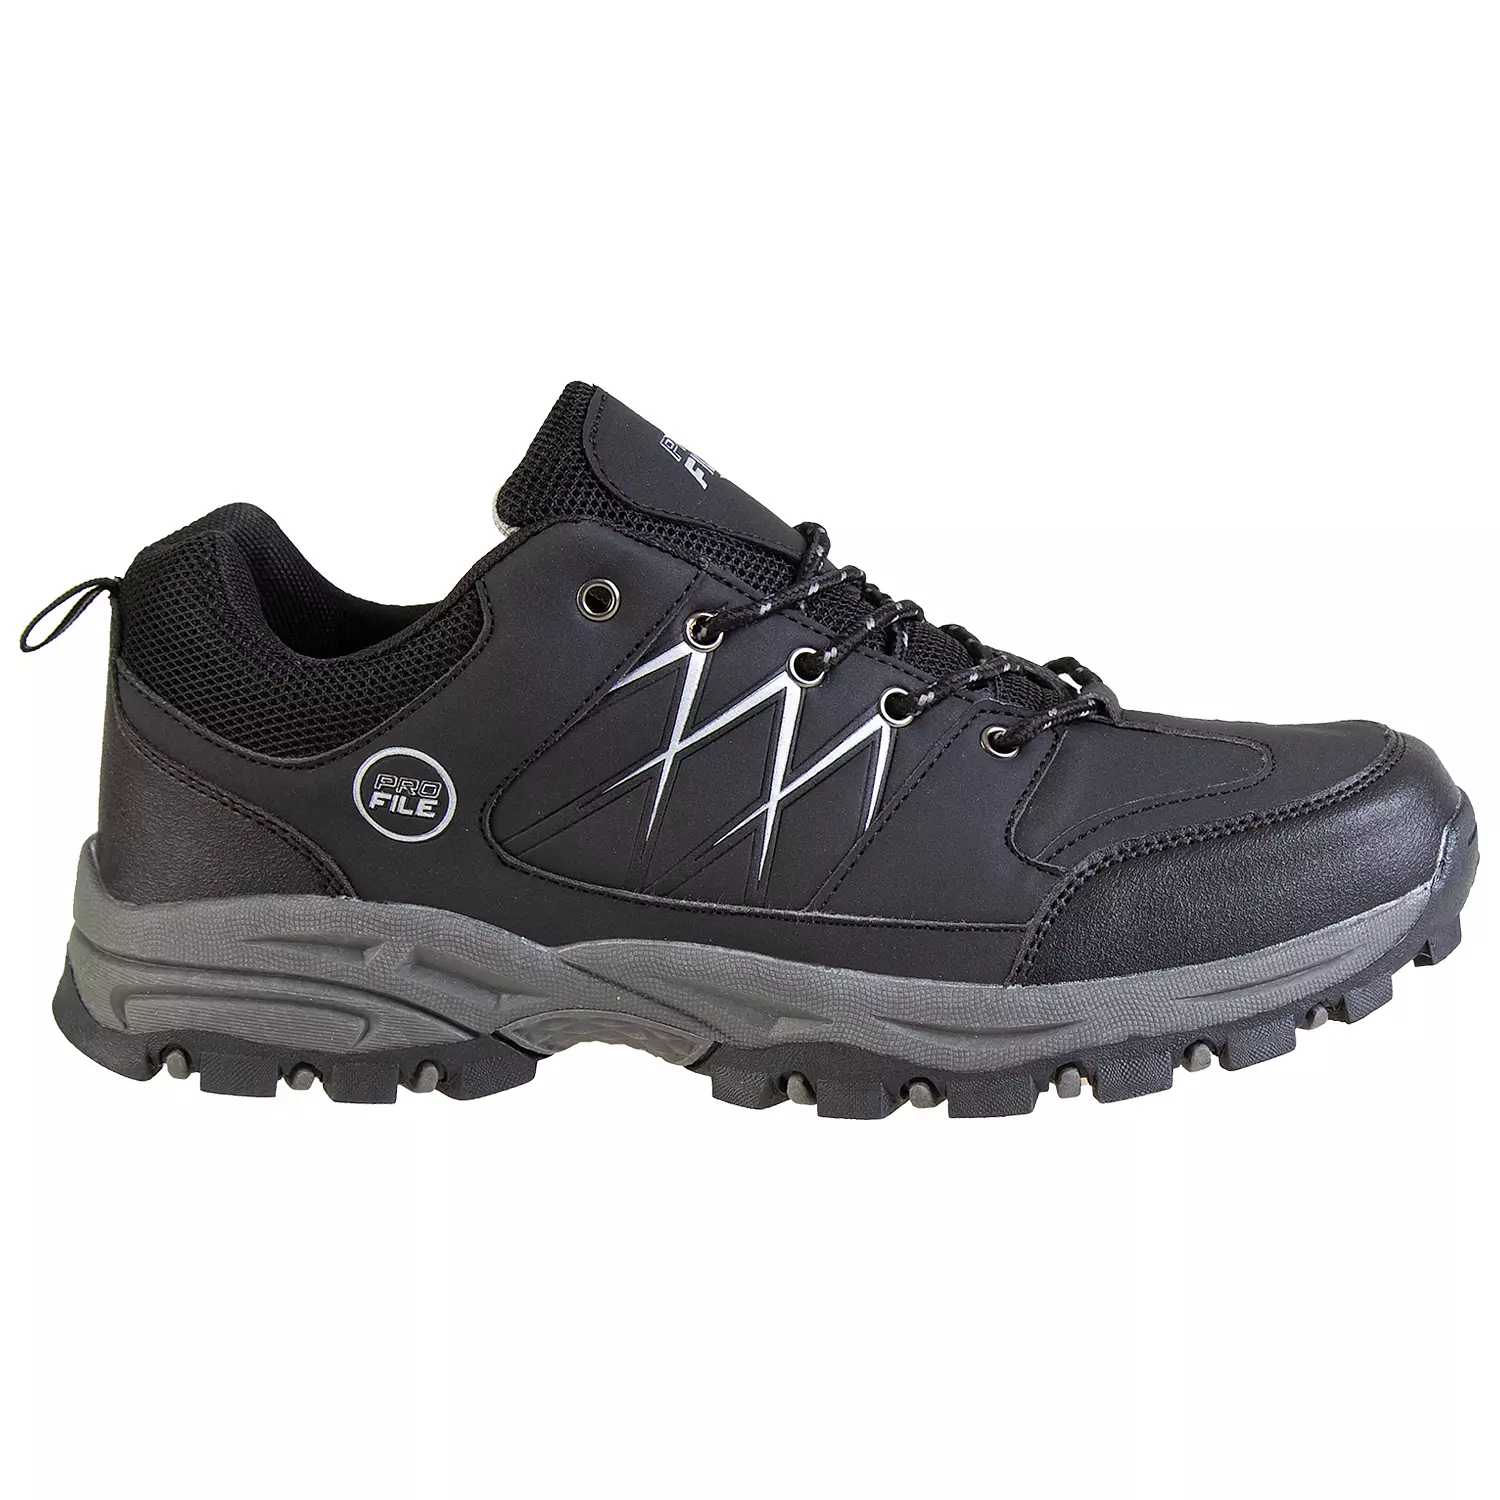 Chaussures de randonnée basses pour hommes avec bandes réfléchissantes, noir, taille 9